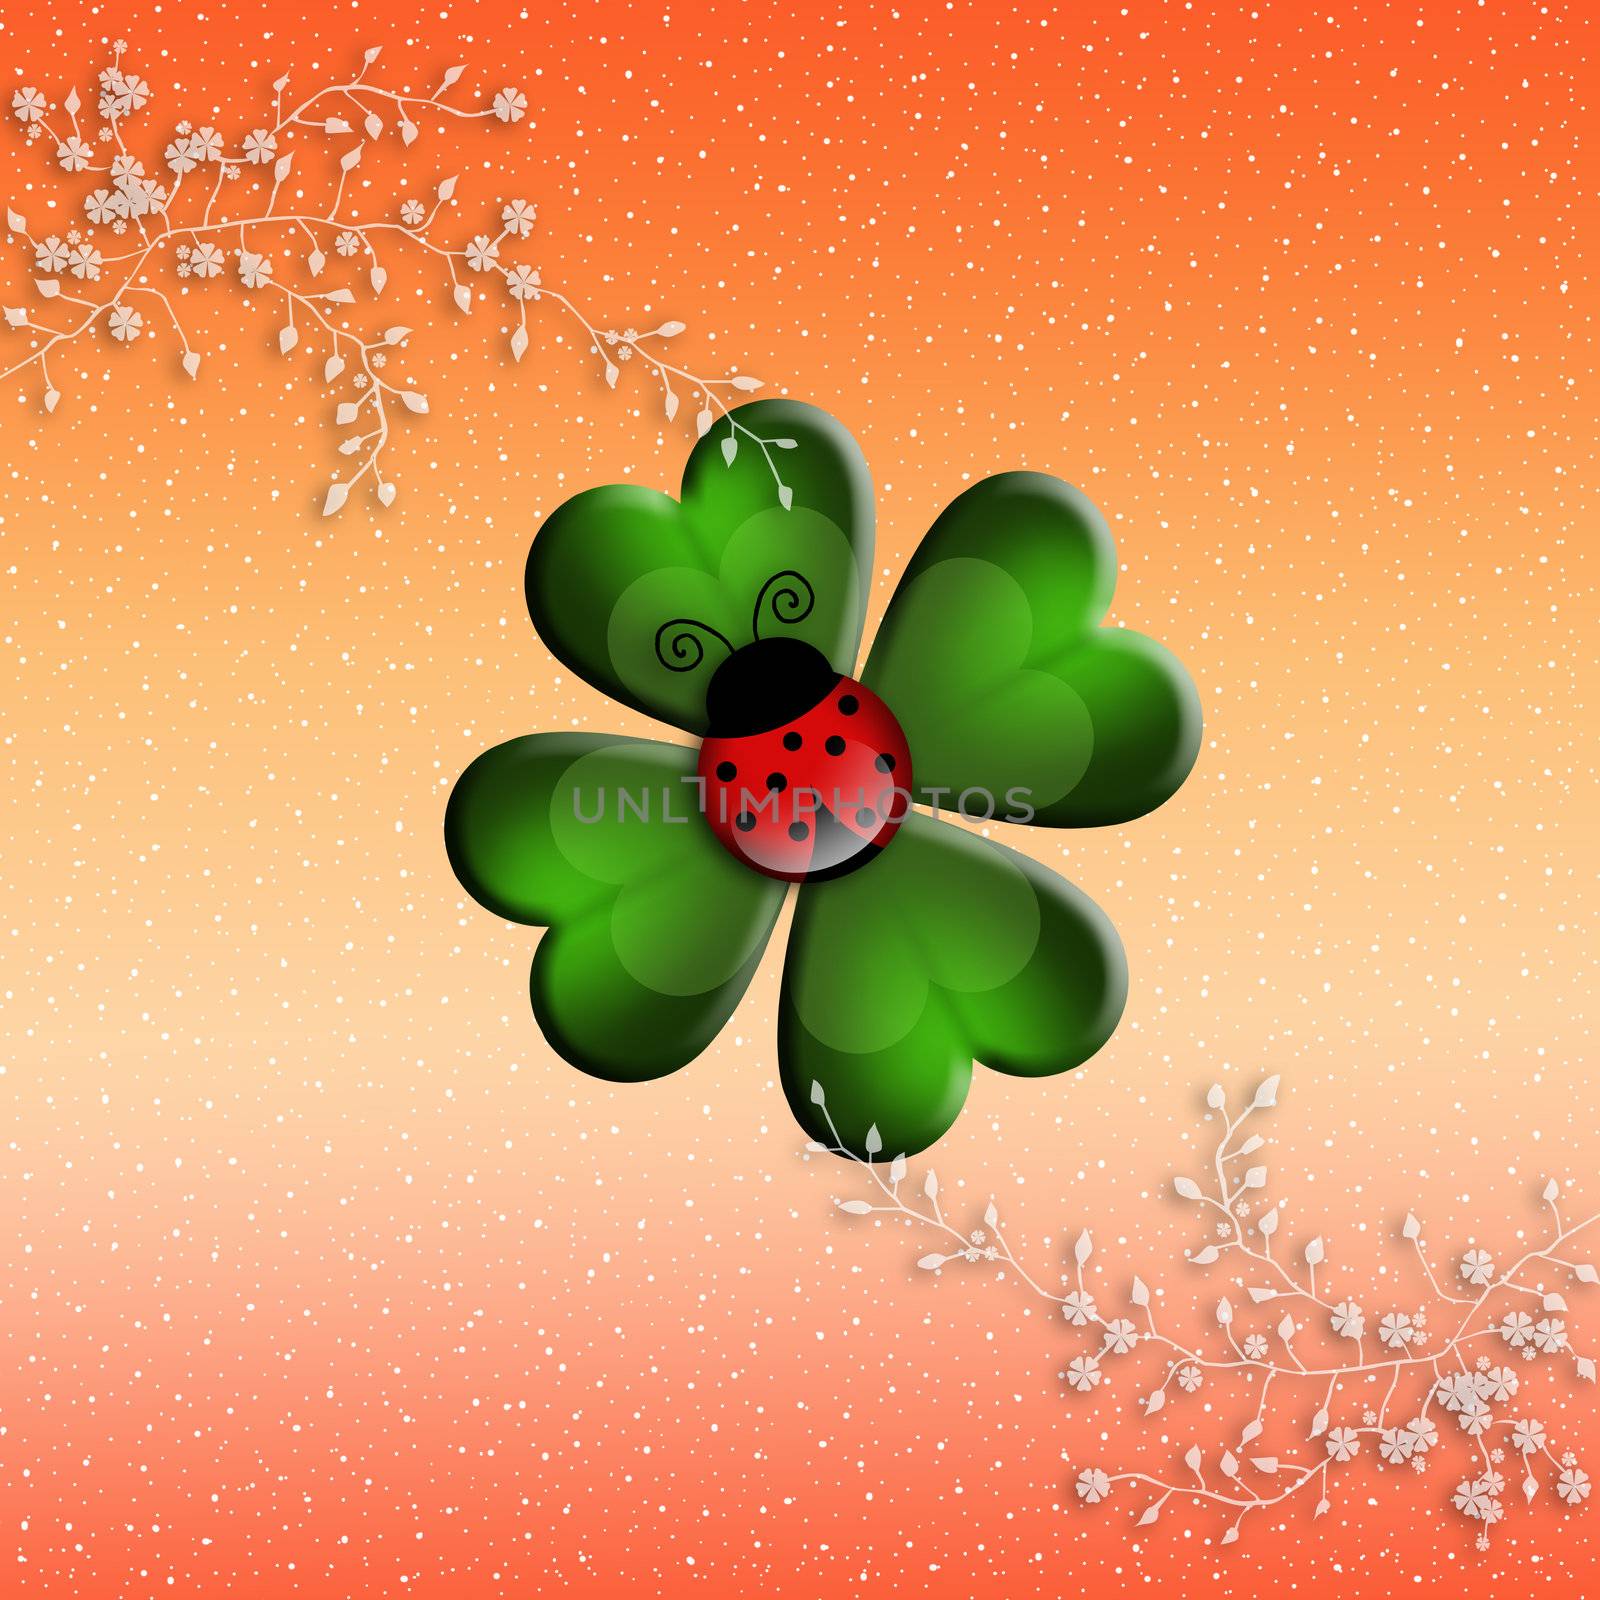 illustration of four-leaf clover with ladybug